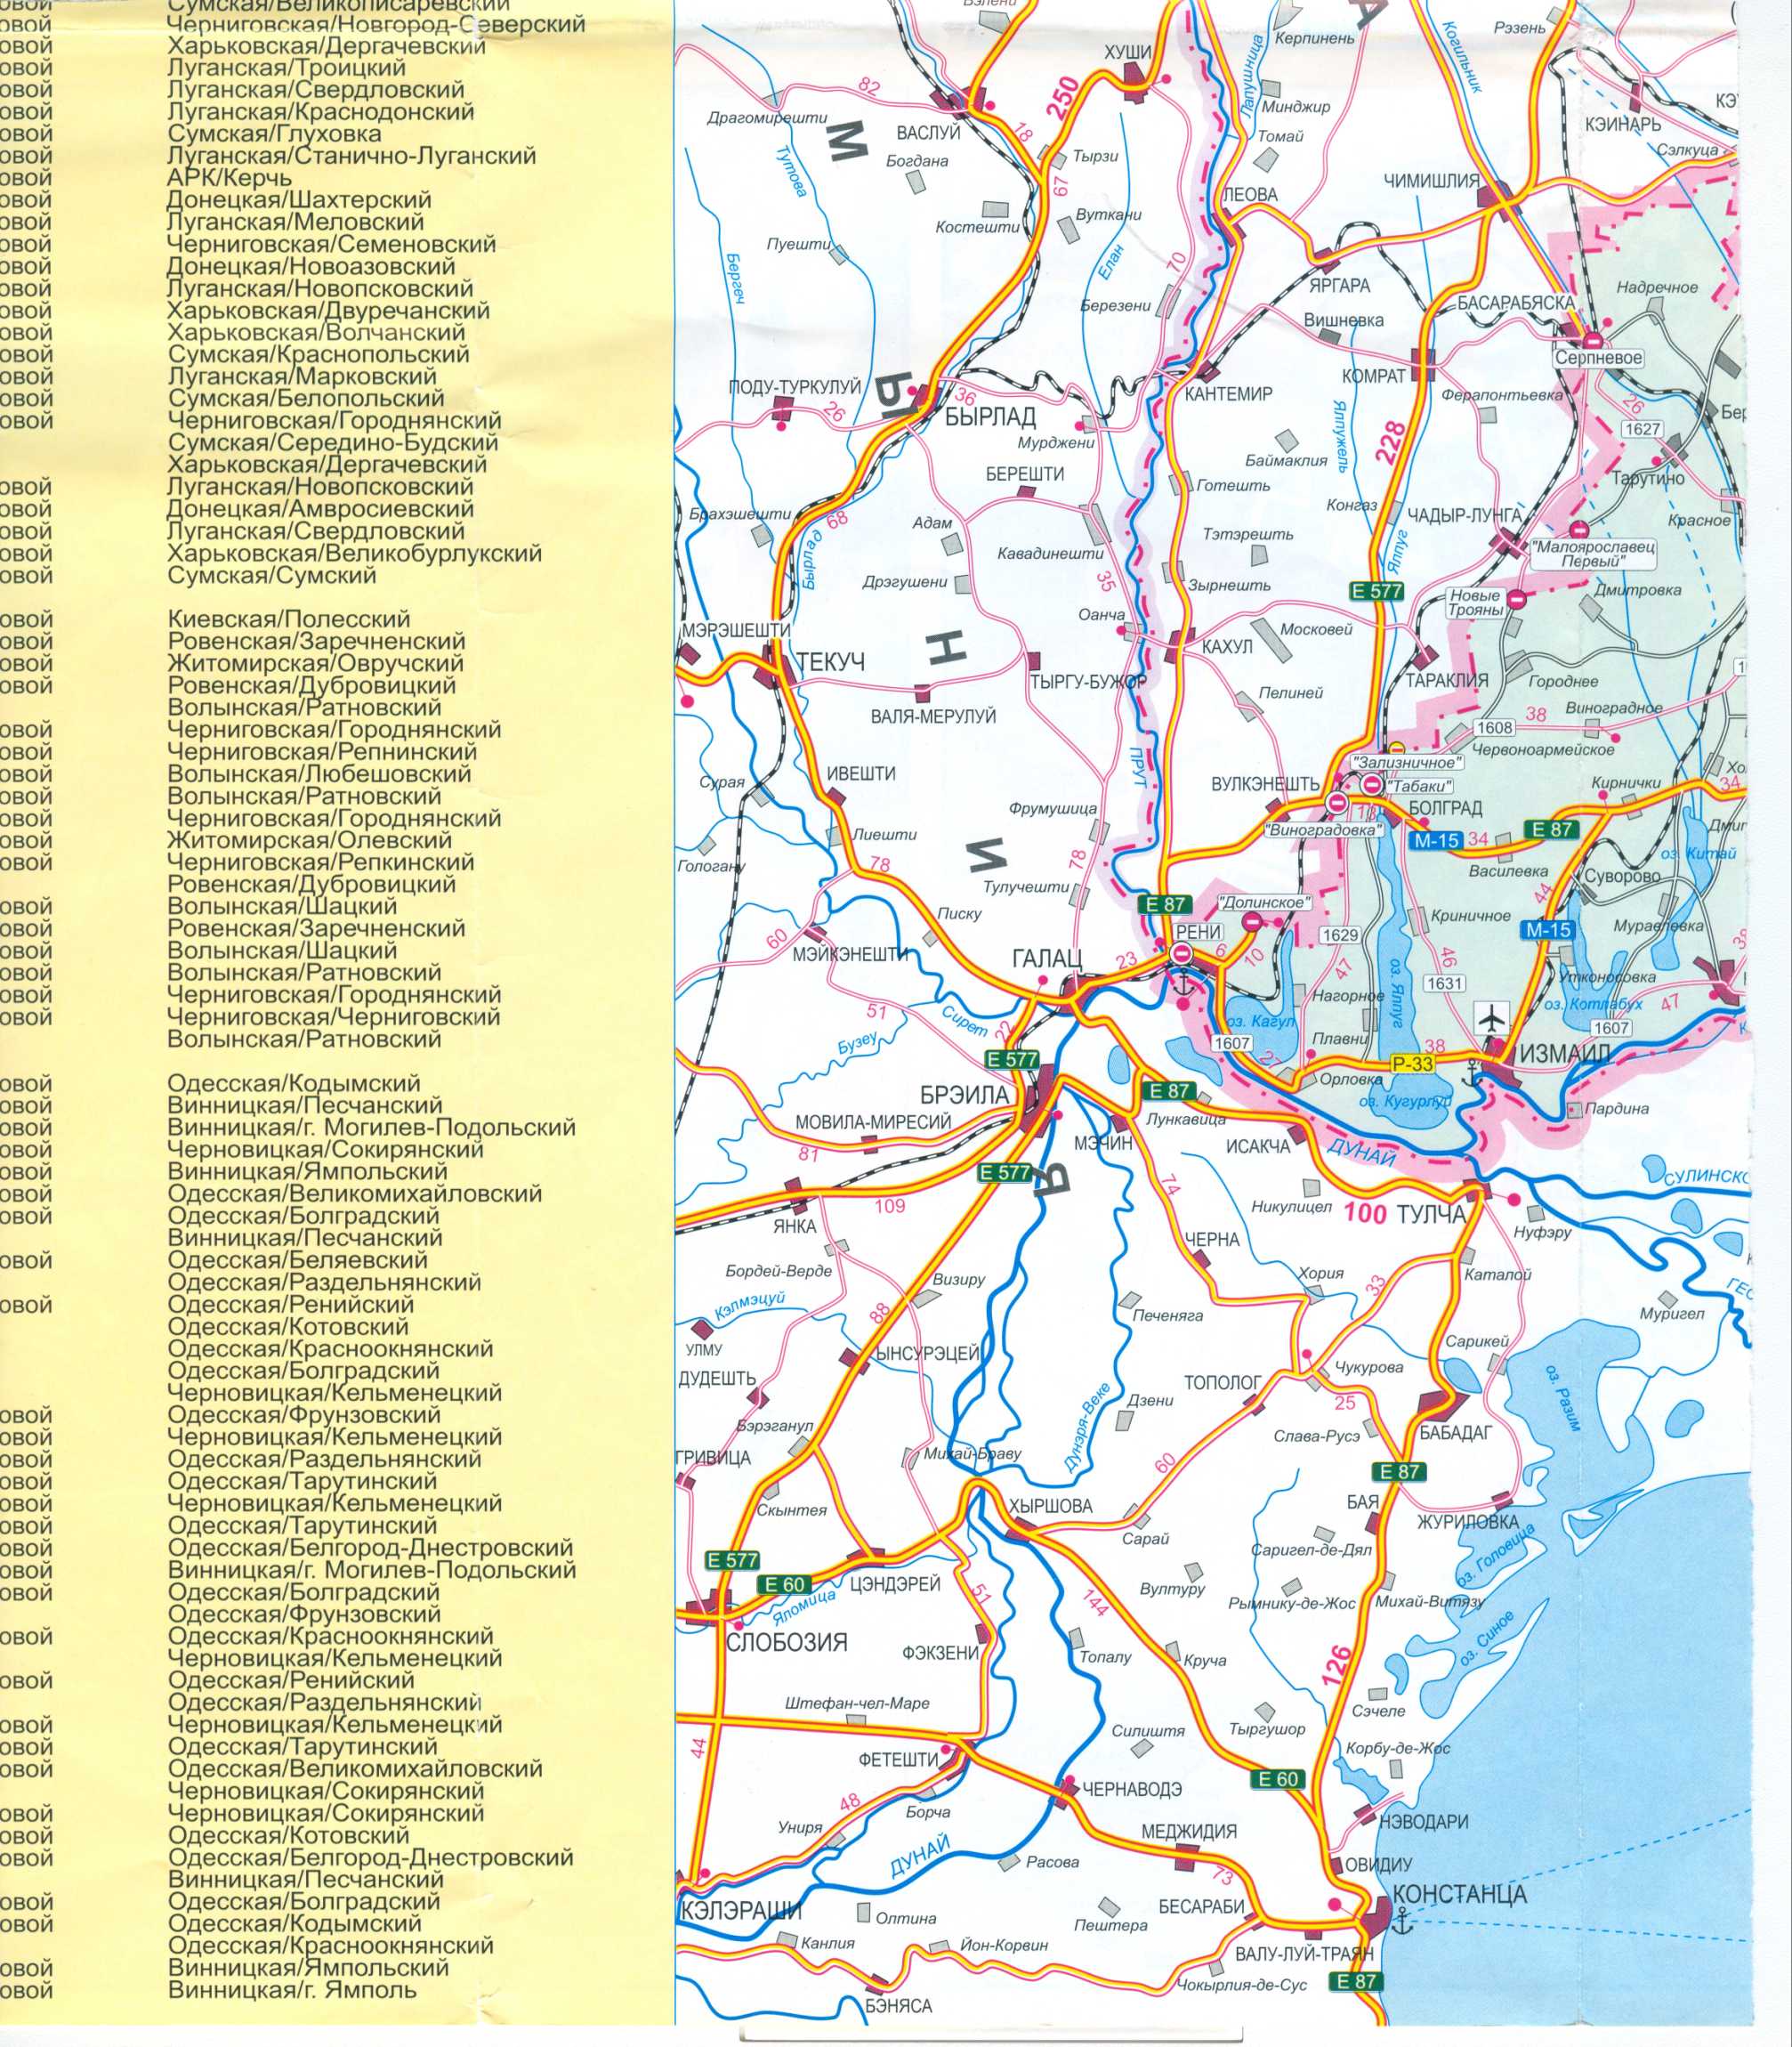 Карта Украины бесплатно. Карта дорог Украины скачать бесплатно. Большая карта дорог Украины бесплатно, B2